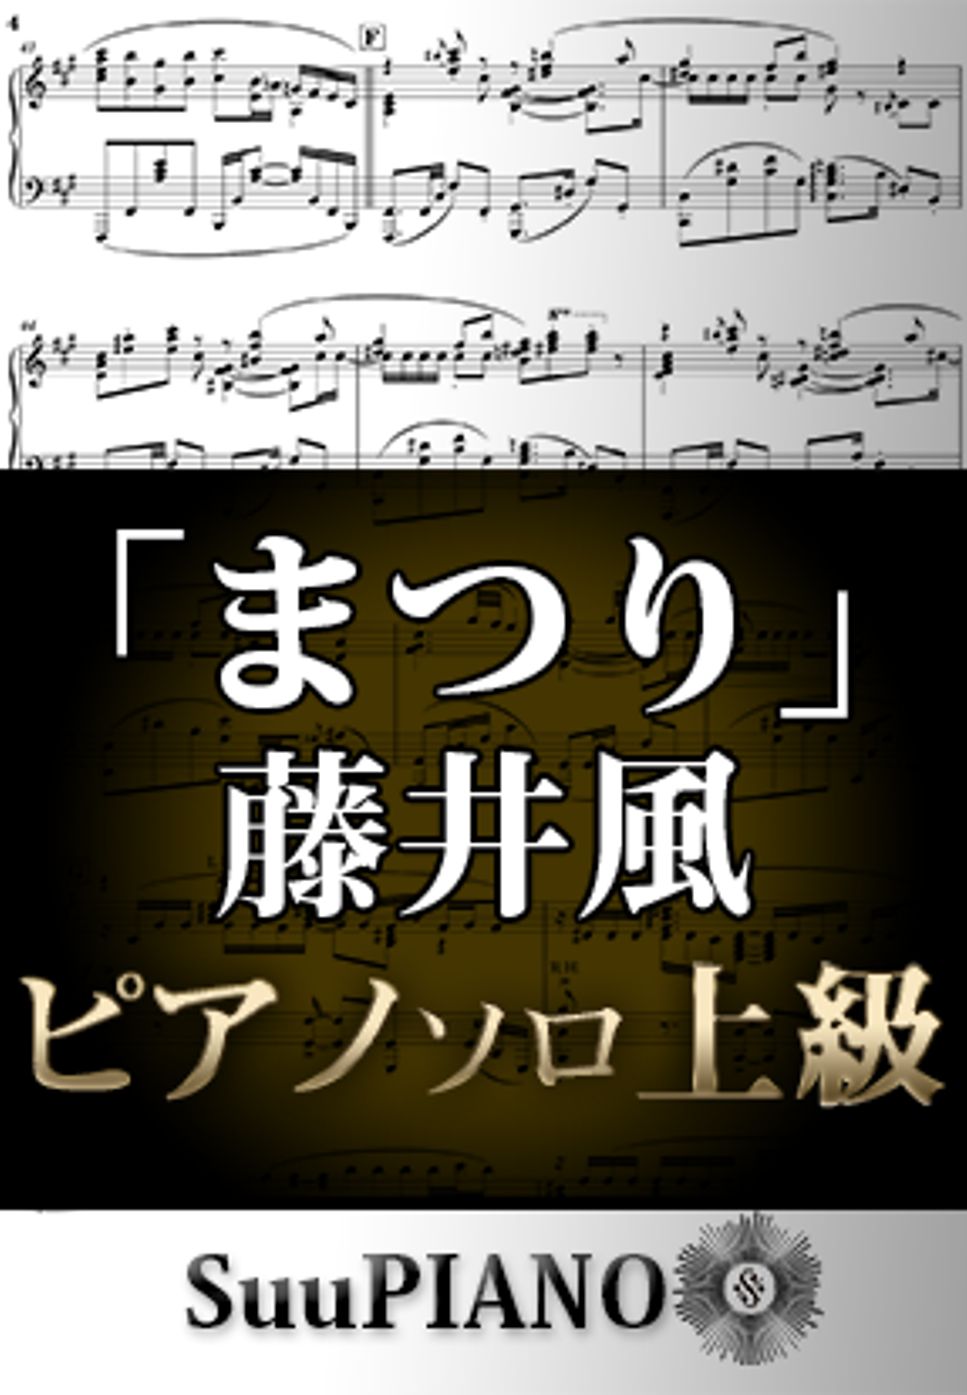 藤井風 - まつり (ピアノソロ上級) by Suu